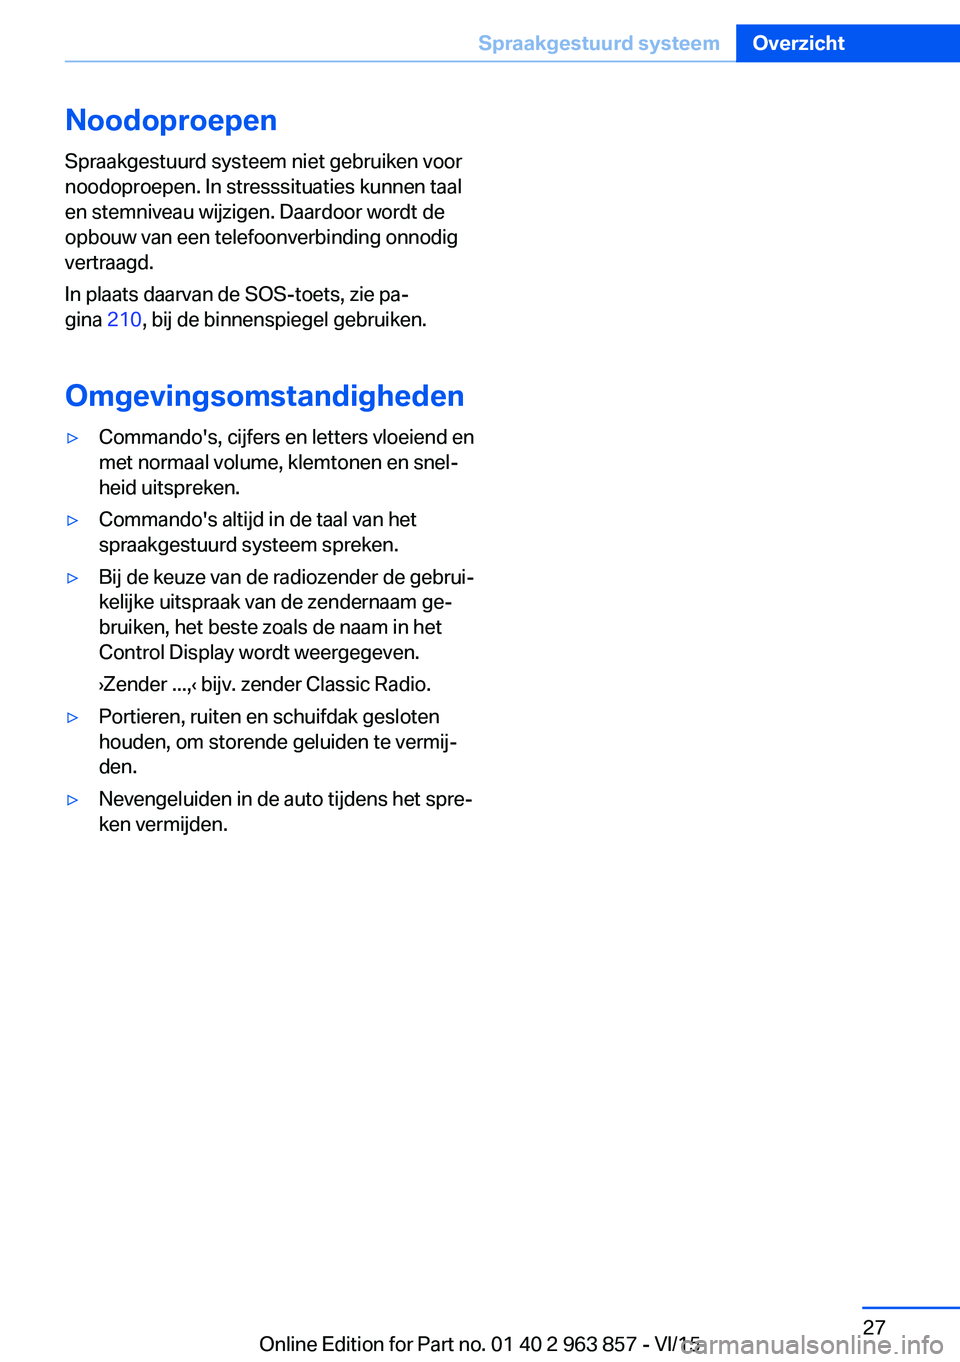 BMW 2 SERIES COUPE 2016  Instructieboekjes (in Dutch) NoodoproepenSpraakgestuurd systeem niet gebruiken voor
noodoproepen. In stresssituaties kunnen taal
en stemniveau wijzigen. Daardoor wordt de
opbouw van een telefoonverbinding onnodig
vertraagd.
In pl